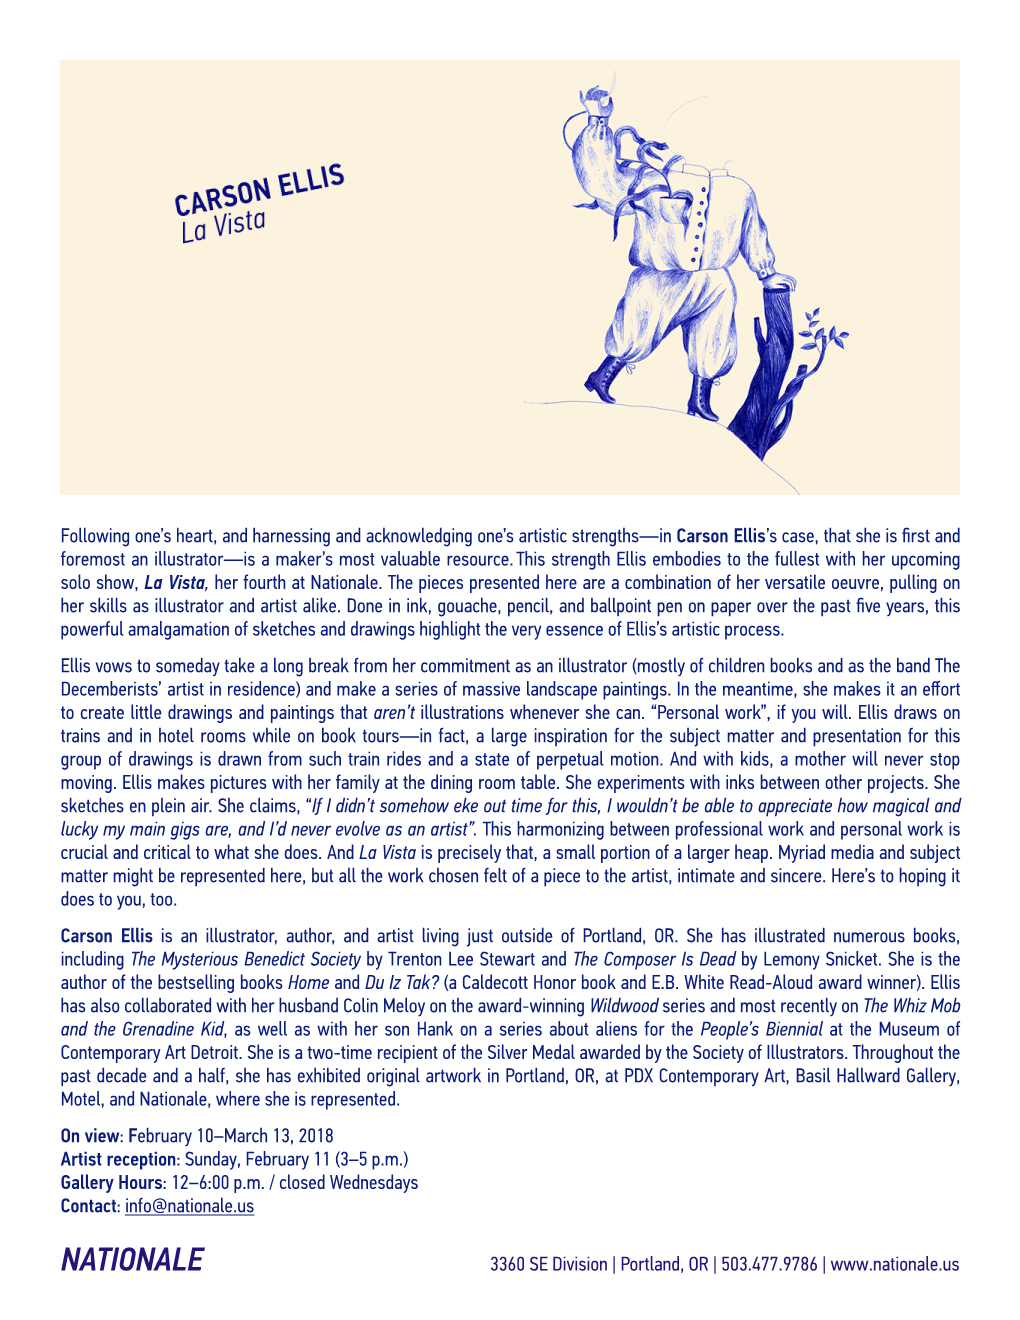 Carson Ellis Release 2018